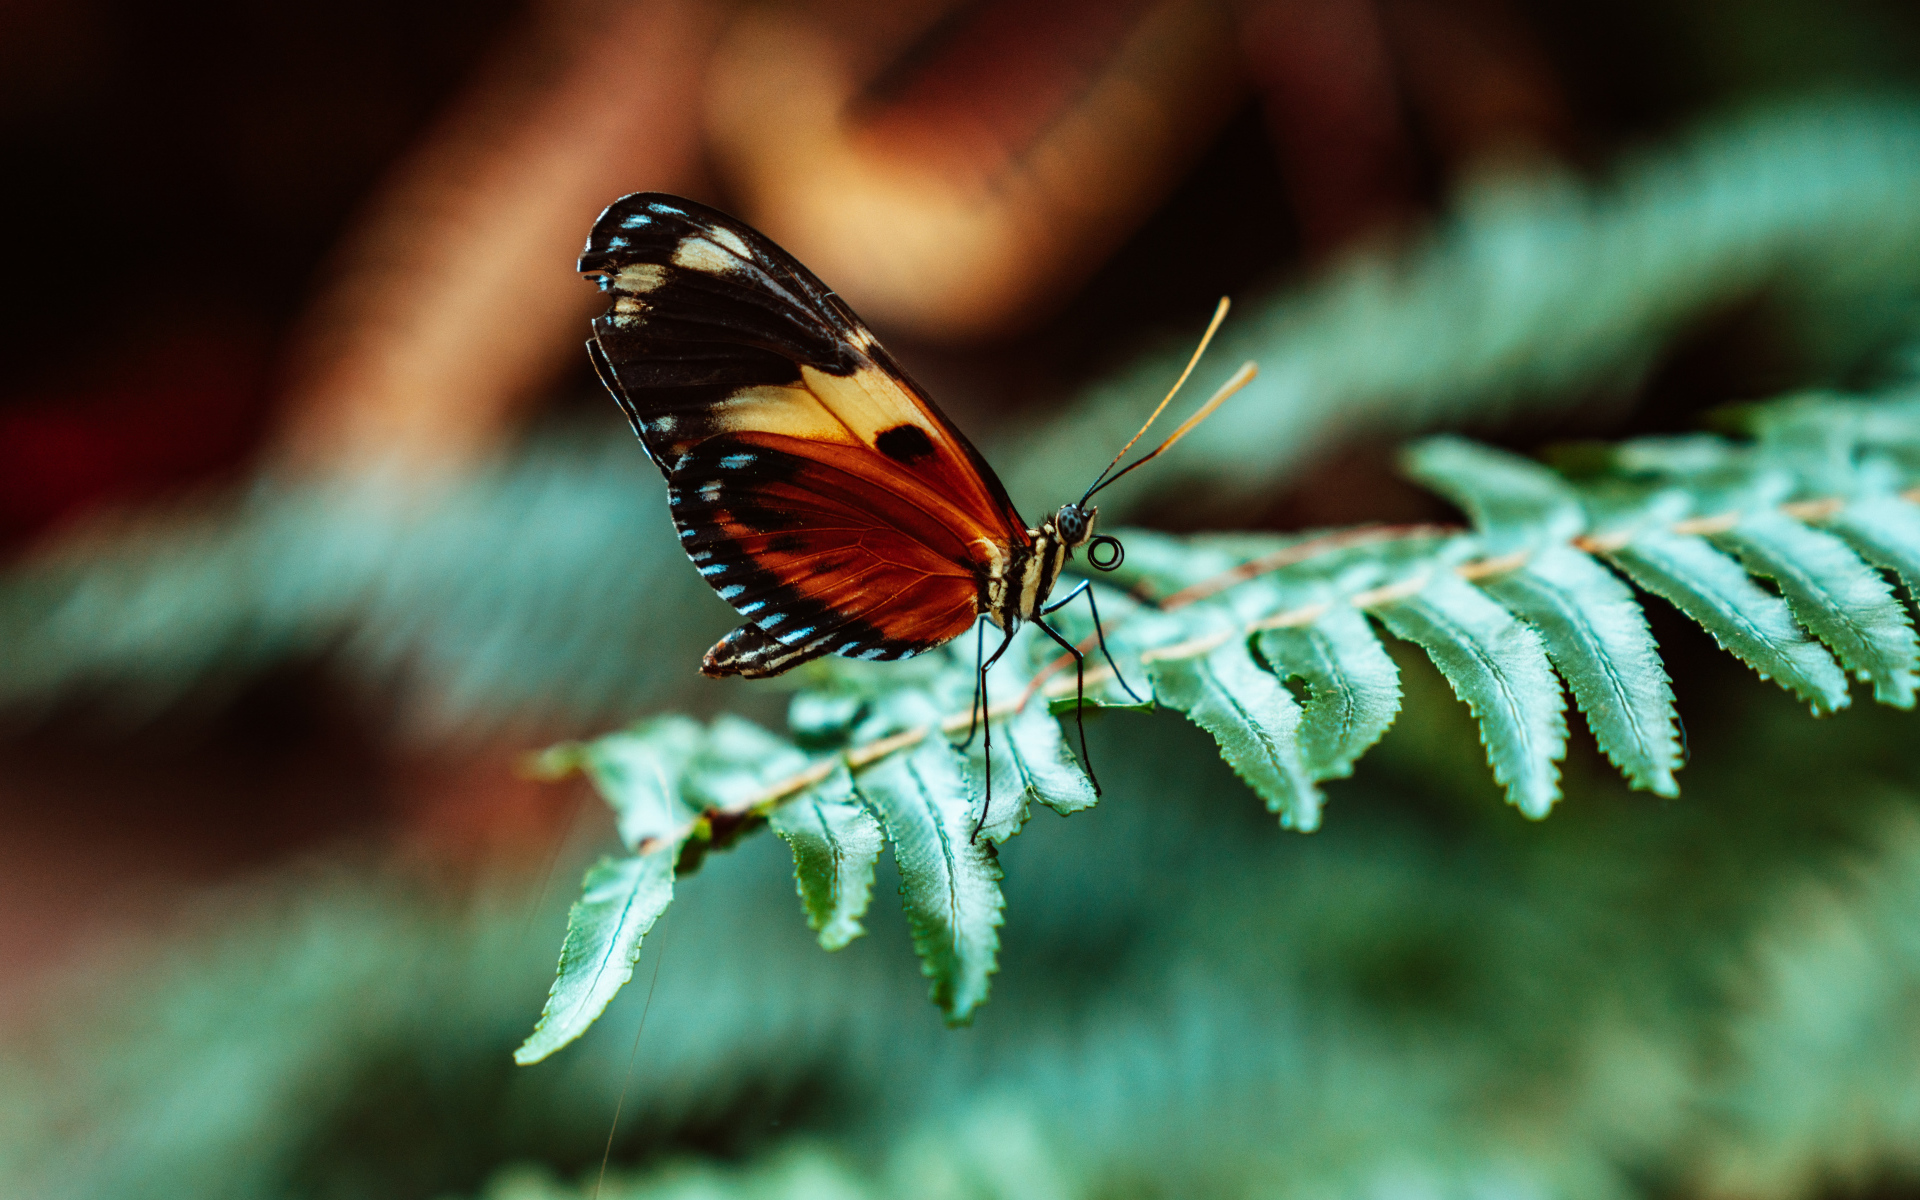 Бабочка сидит на зеленом листе папоротника 